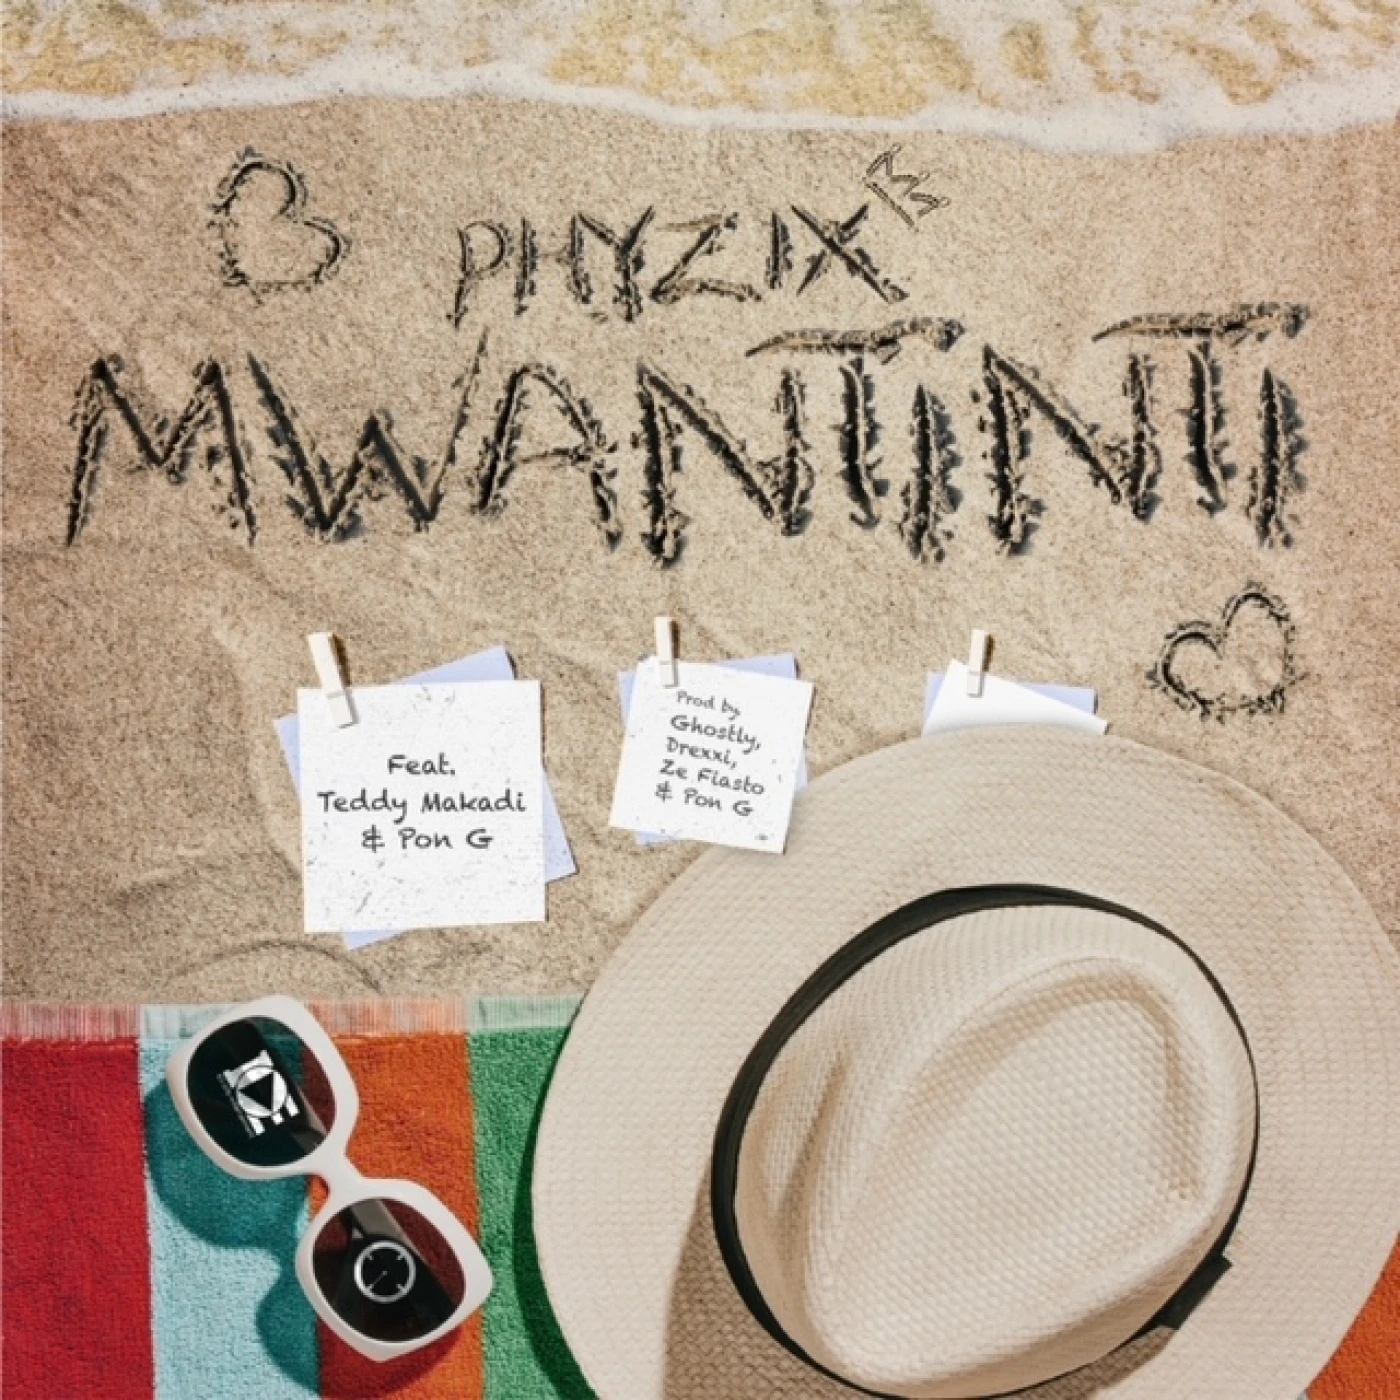 mwantinti-feat-teddy-makadi-pon-g-phyzix-Just Malawi Music